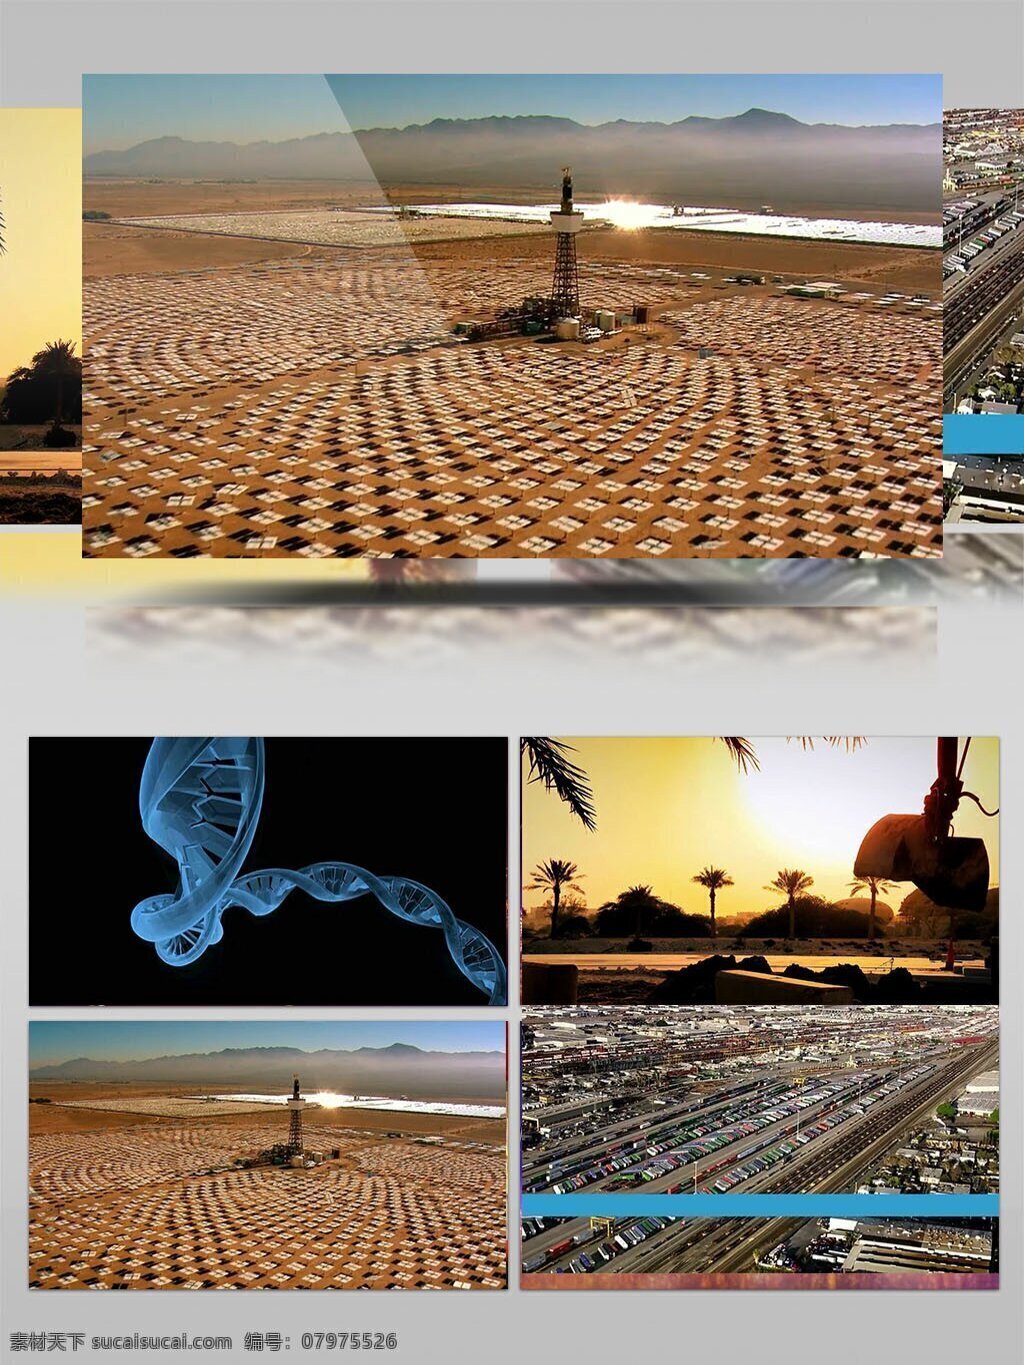 工业 科技 大发 展 视频 港口 工业科技 海底石油 石油生产